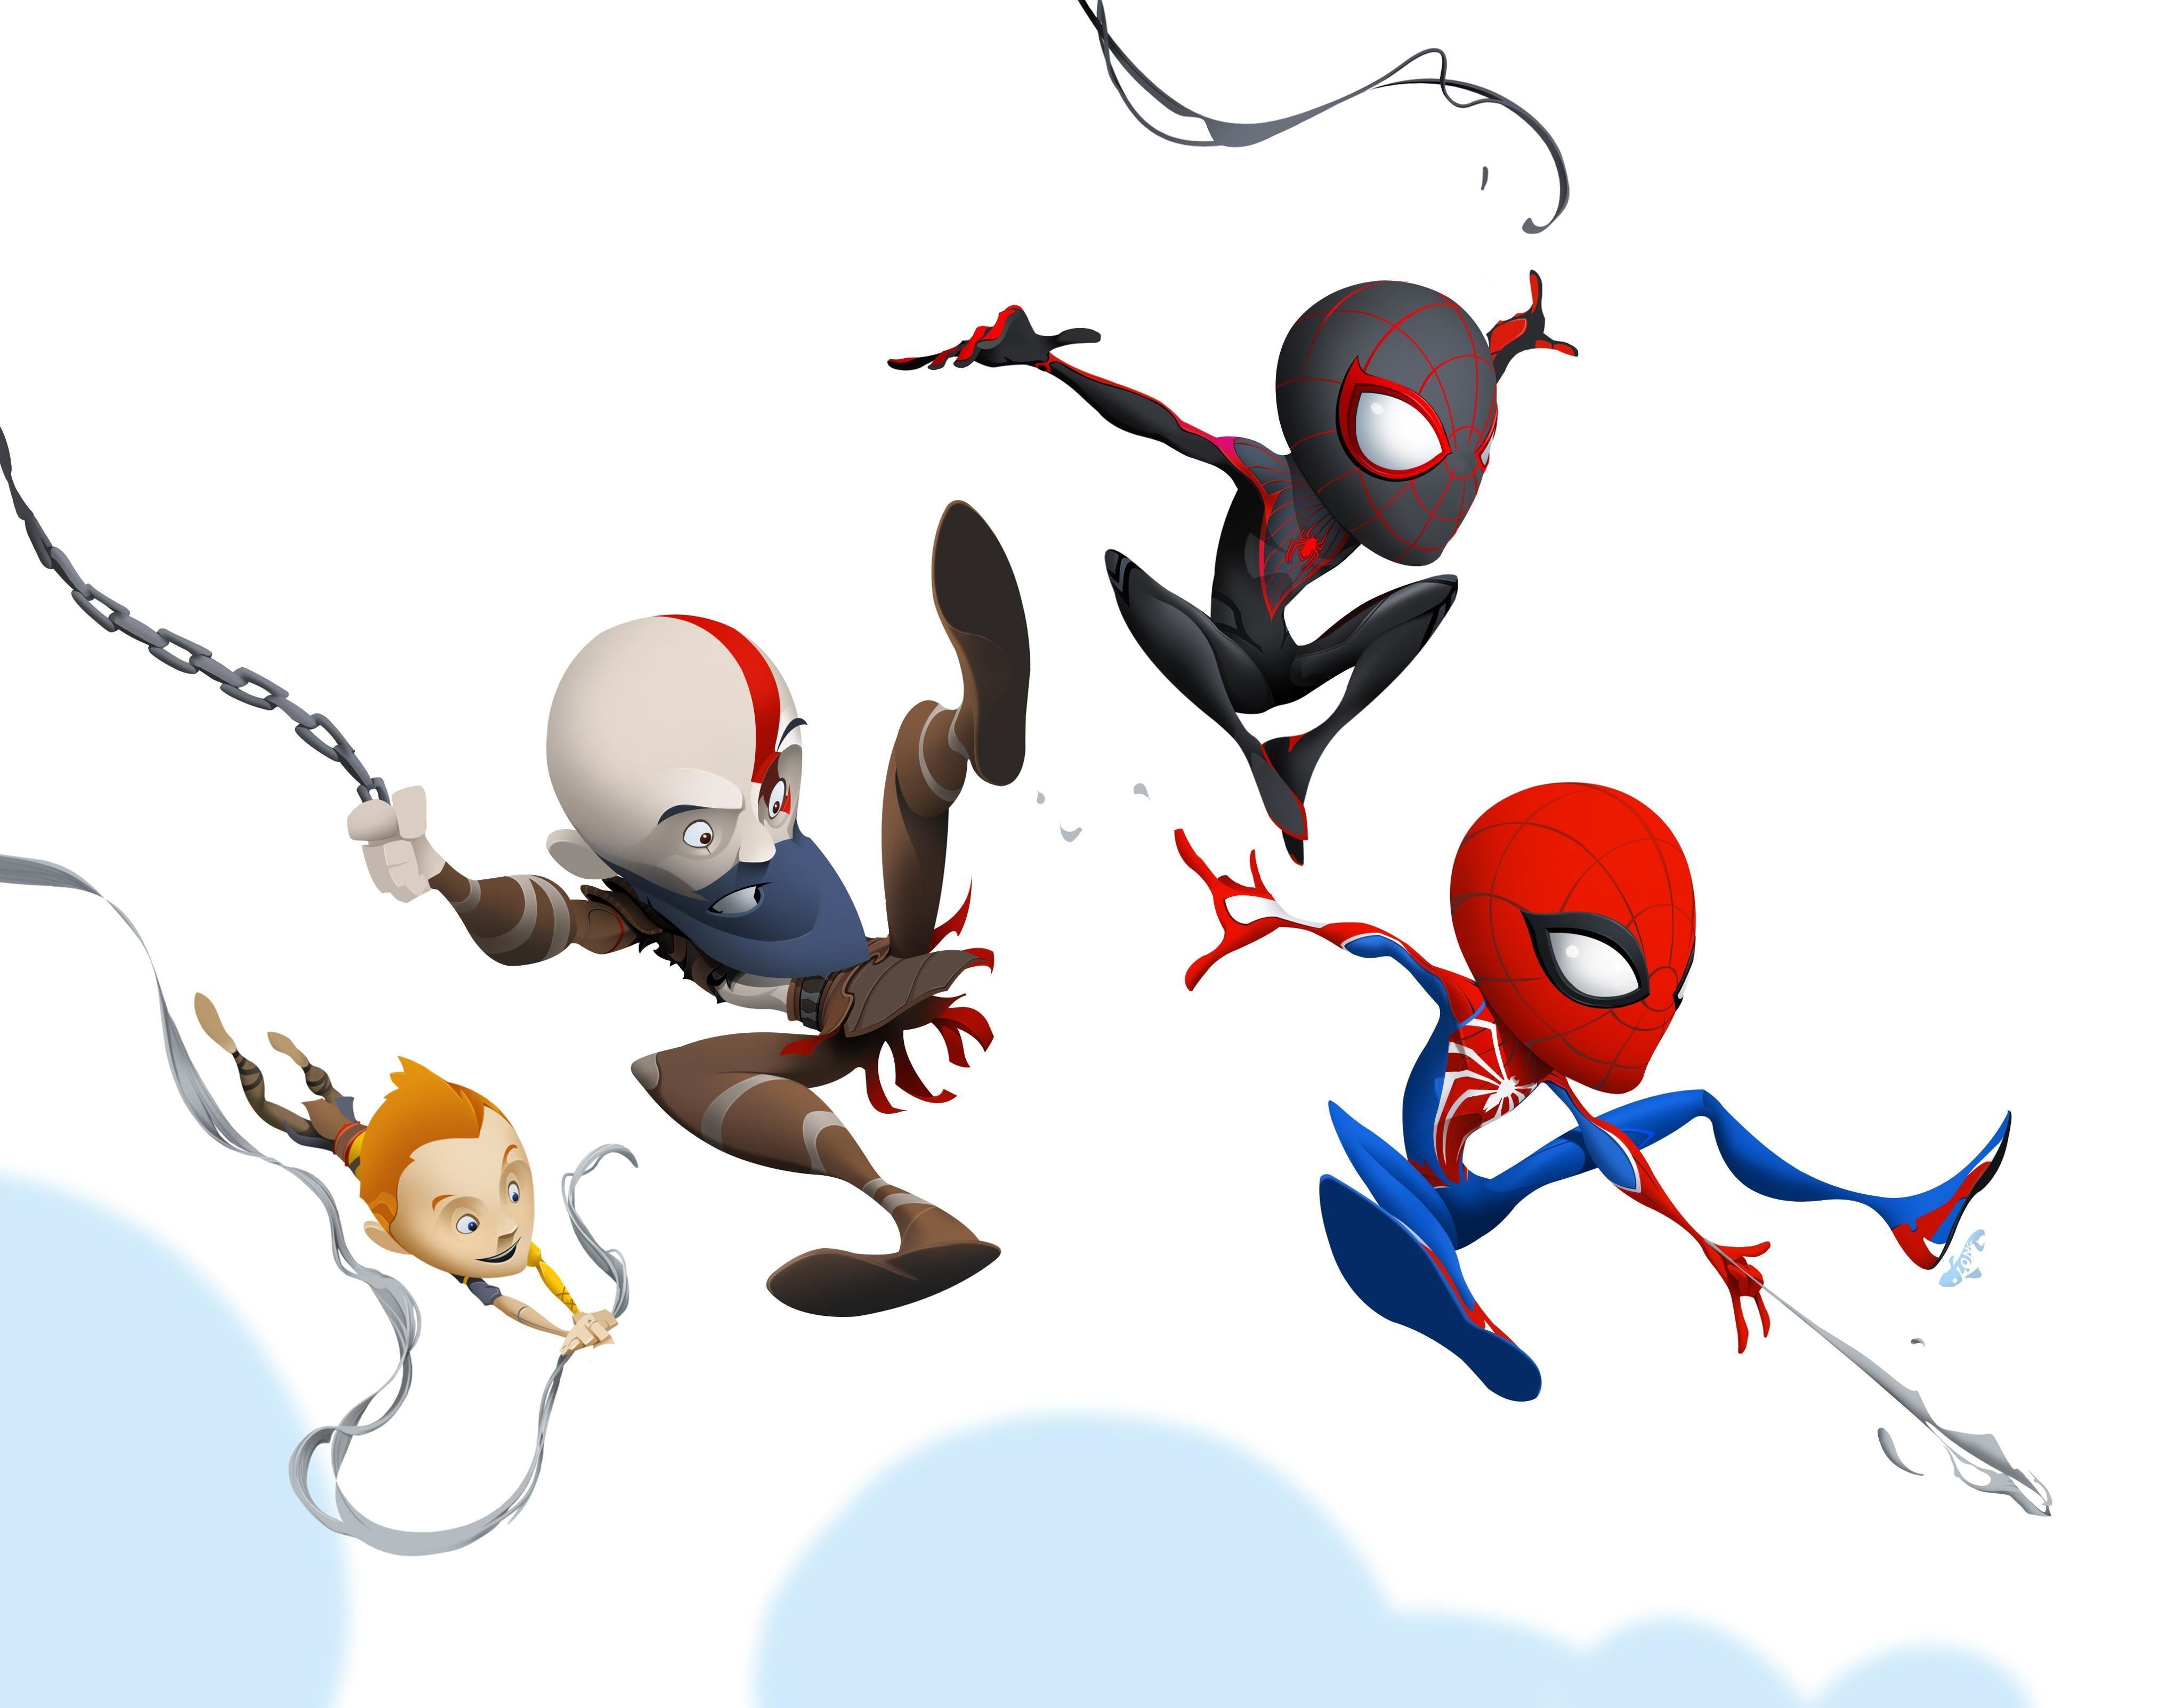 Элой и Кратос веселяться с Пауками: Студии Sony поделились артами в честь релиза Marvel's Spider-Man 2 |0